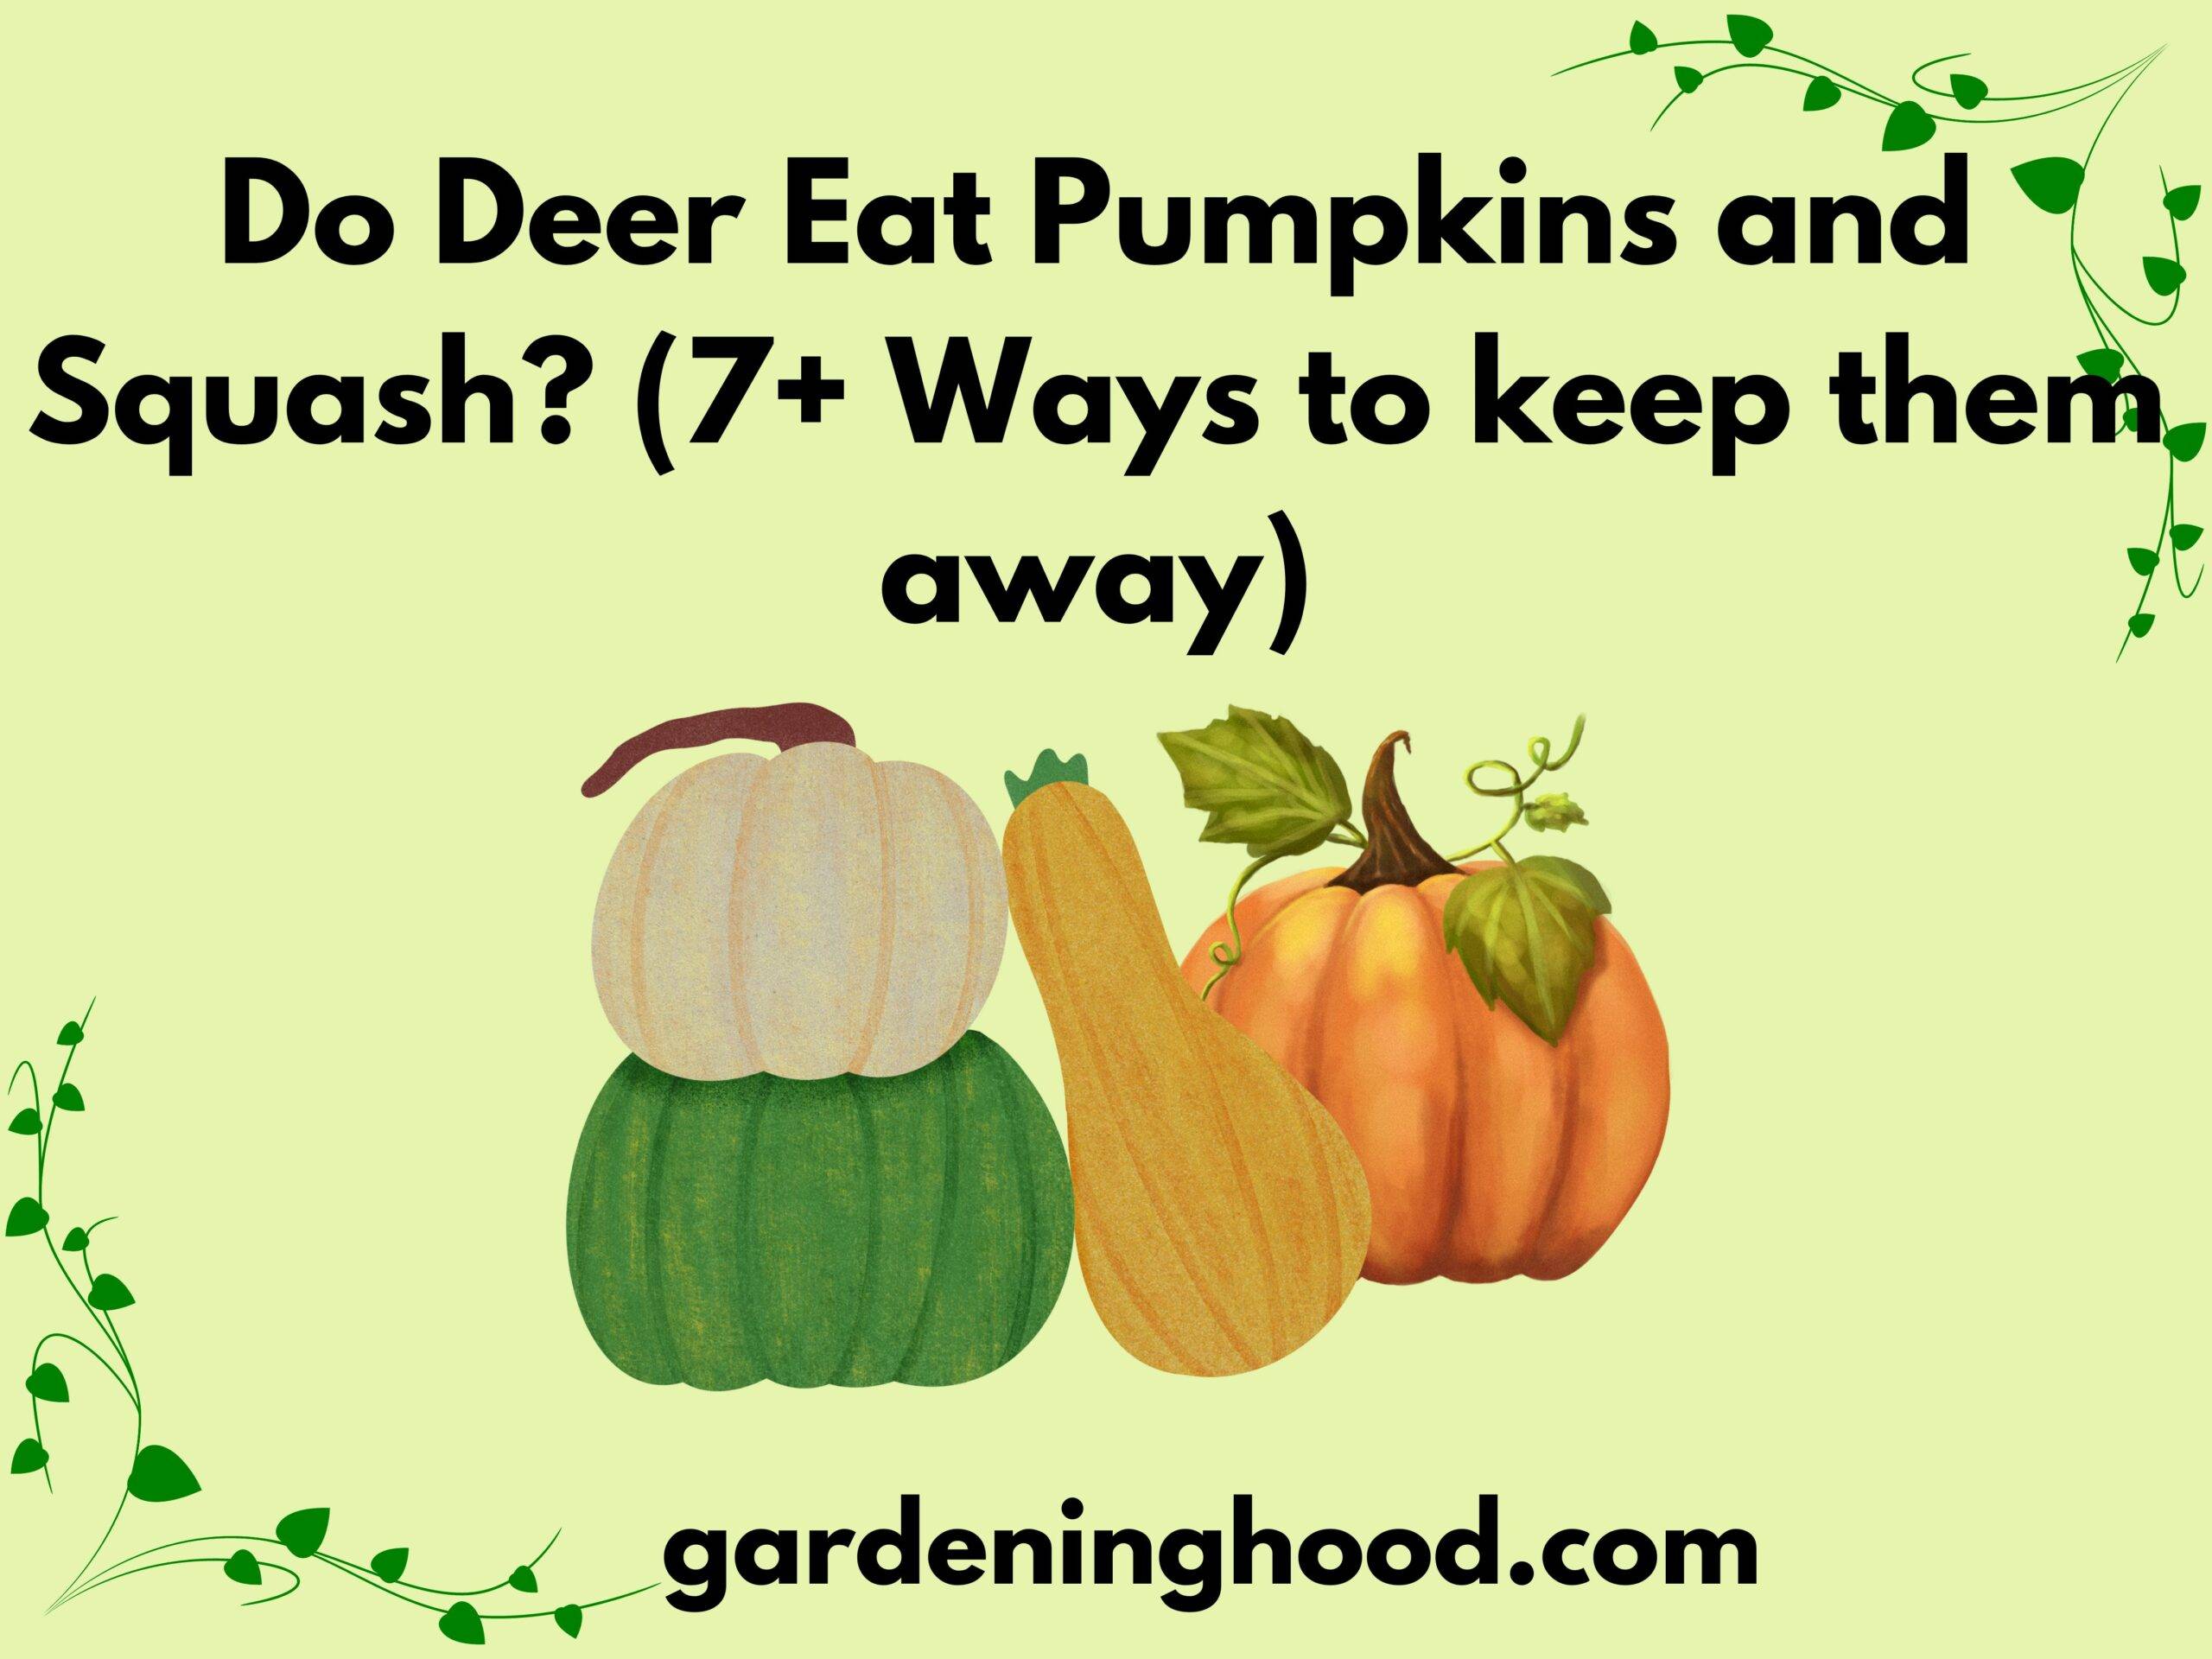 Do Deer Eat Pumpkins and Squash? (7+ Ways to keep them away)